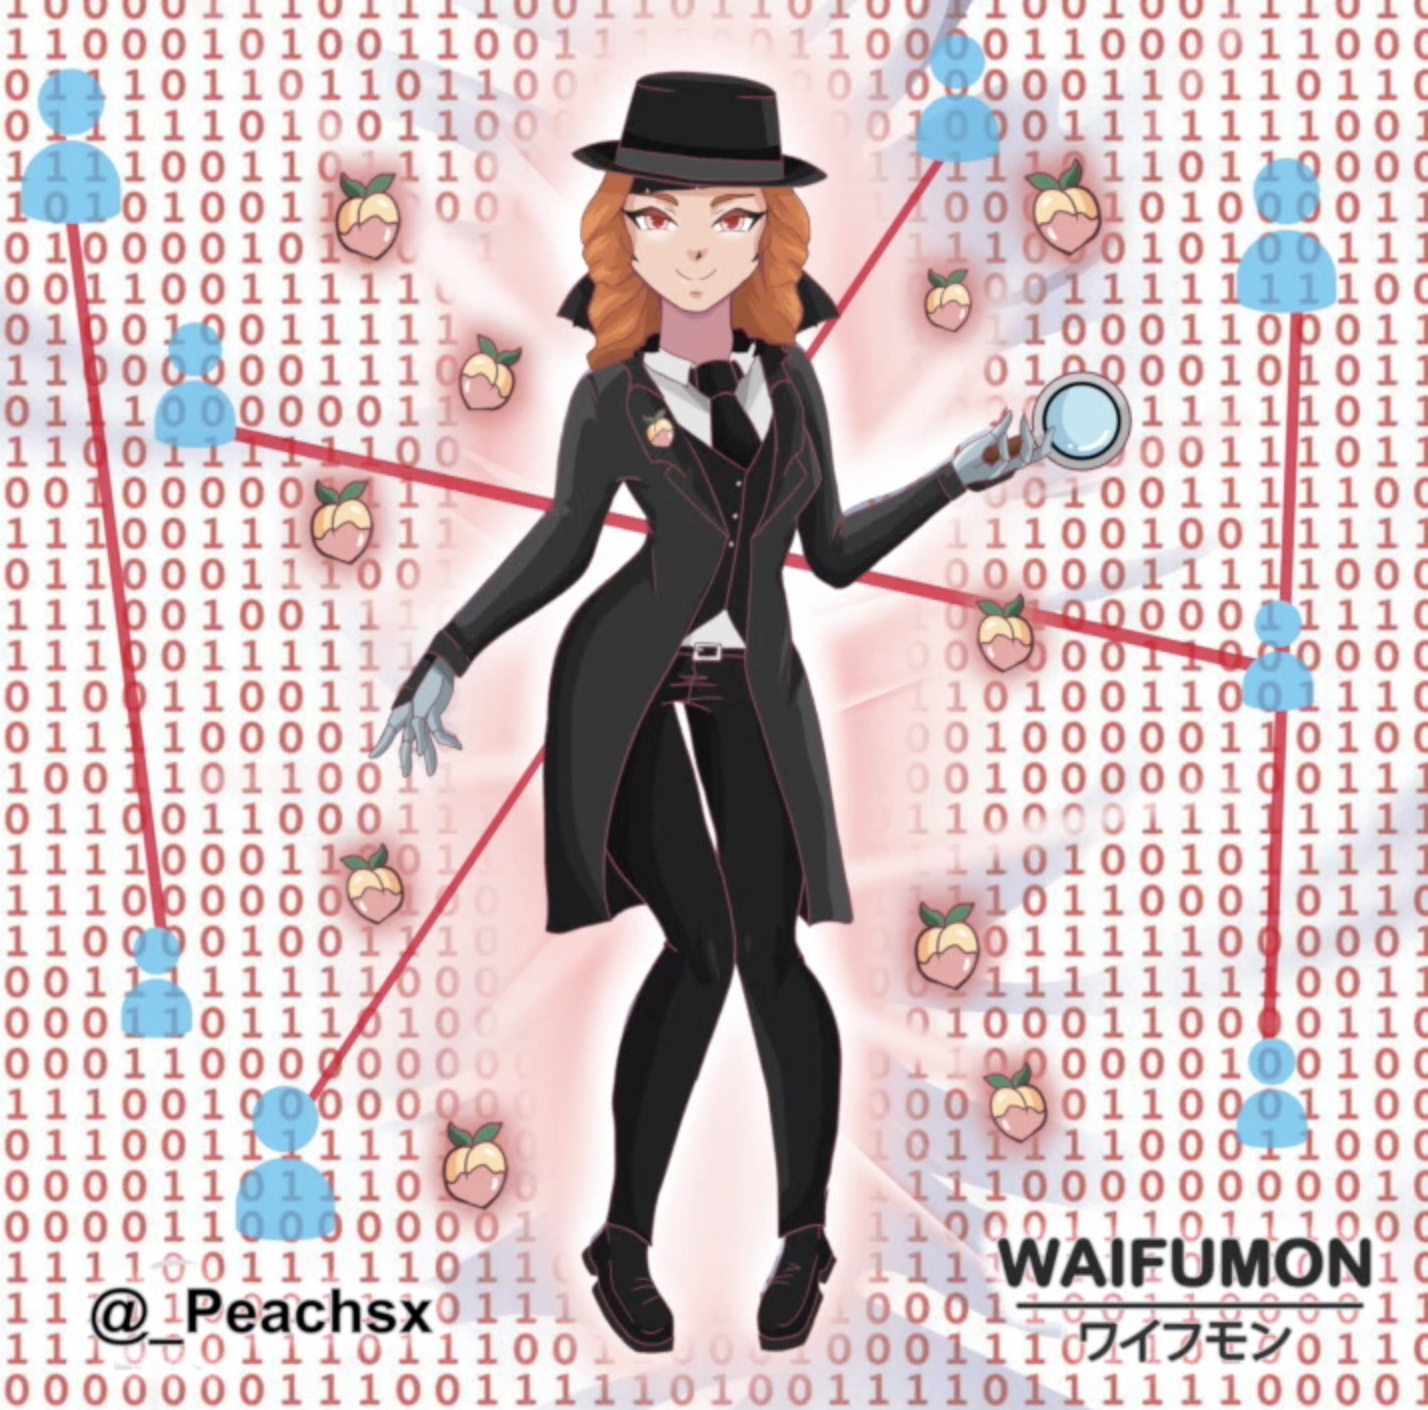 Peachs- Waifumon